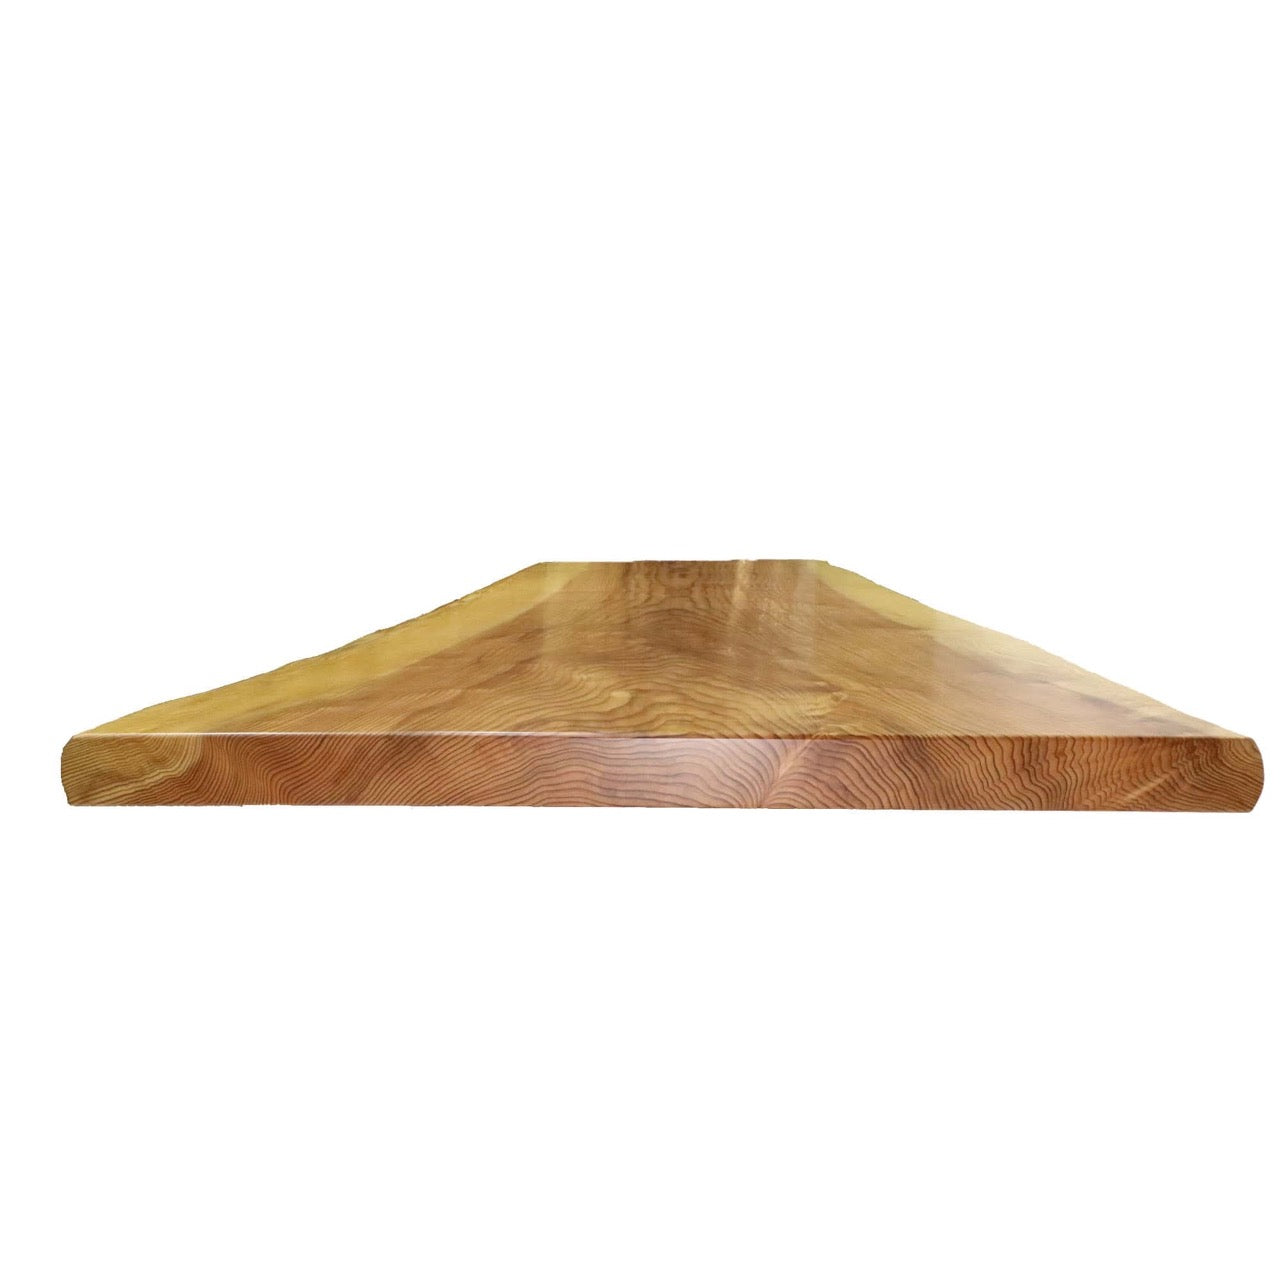 A0002 徳島産杉無垢一枚板 テーブル天板 1,650mm×730mm×55mm